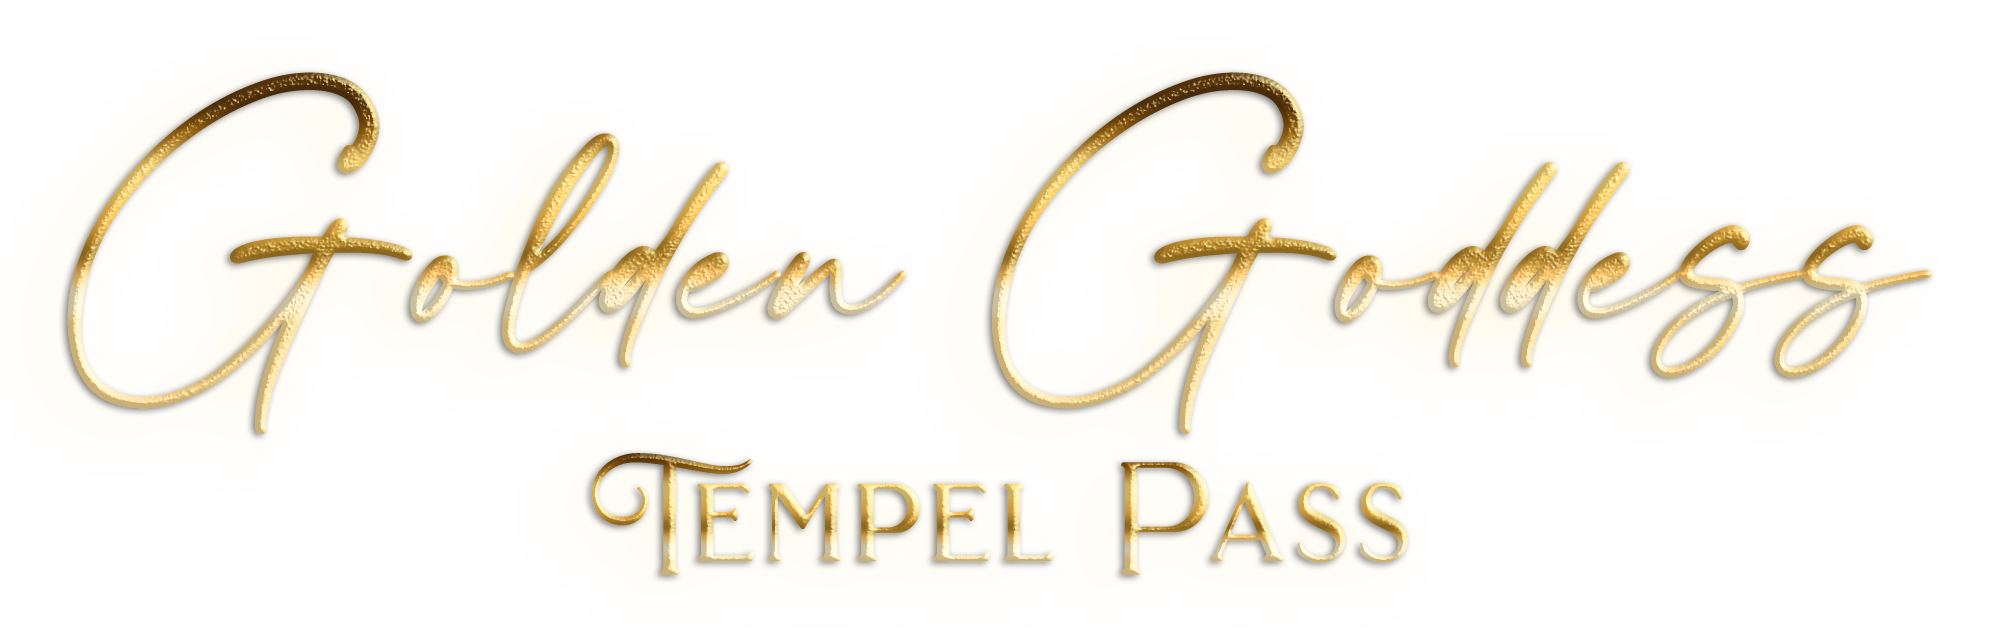 Golden Goddess Temple Pass Logo